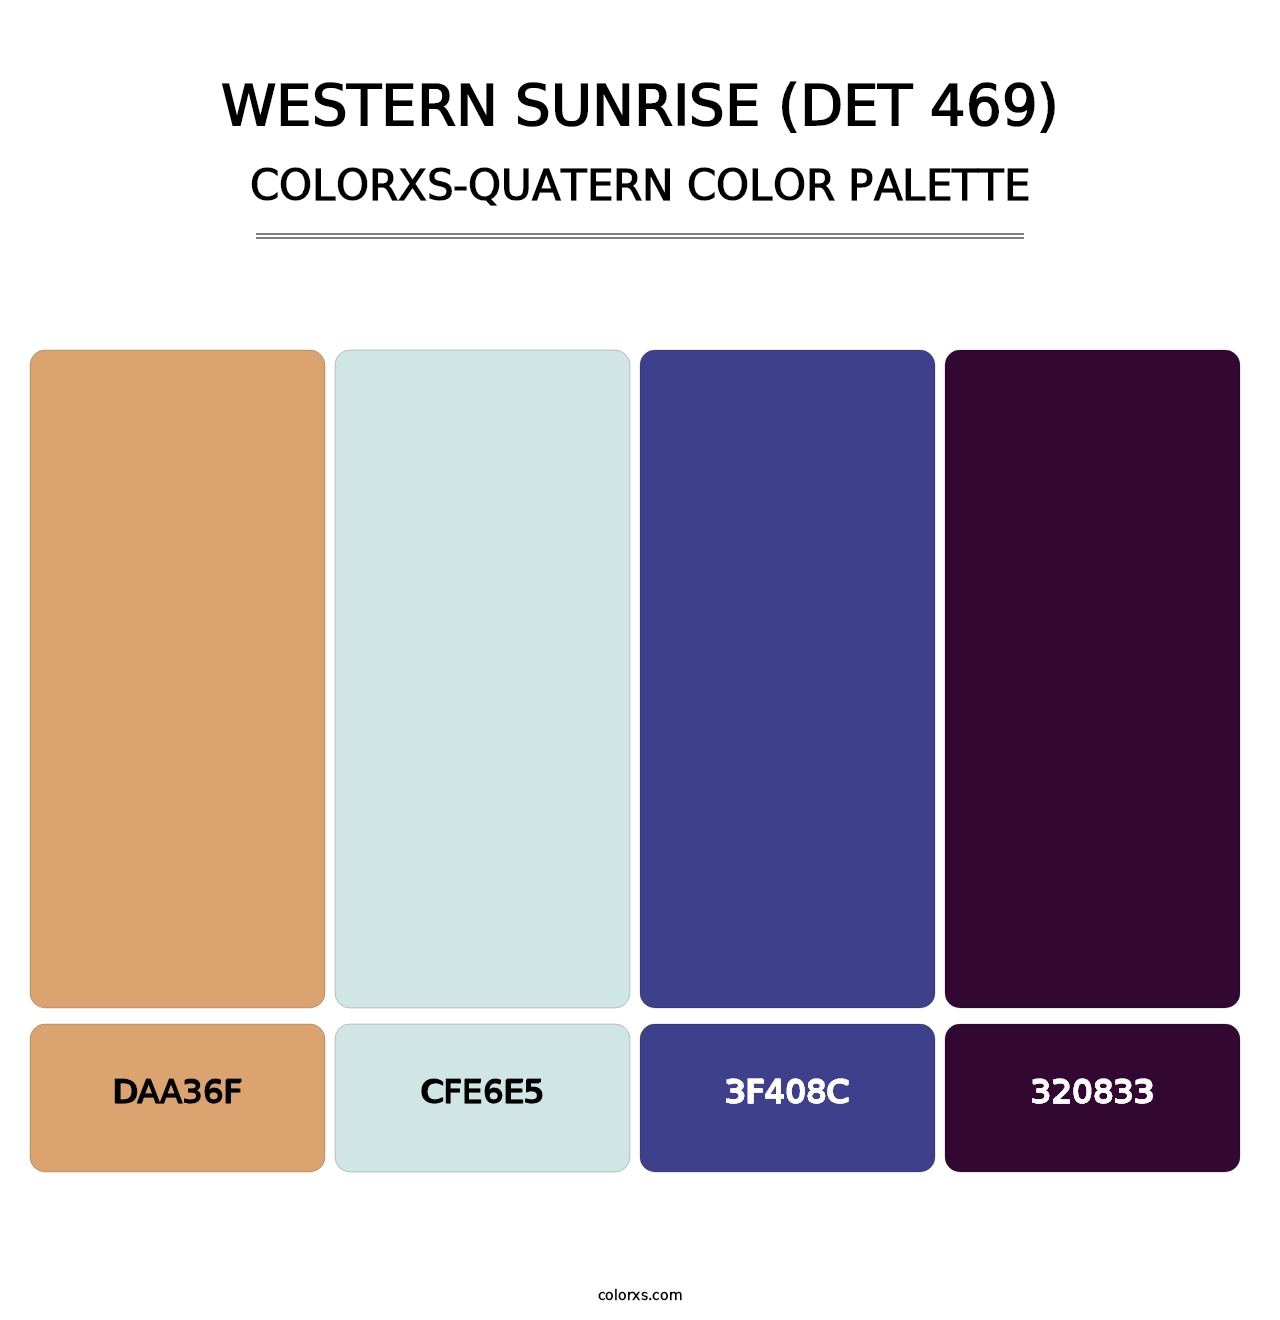 Western Sunrise (DET 469) - Colorxs Quatern Palette